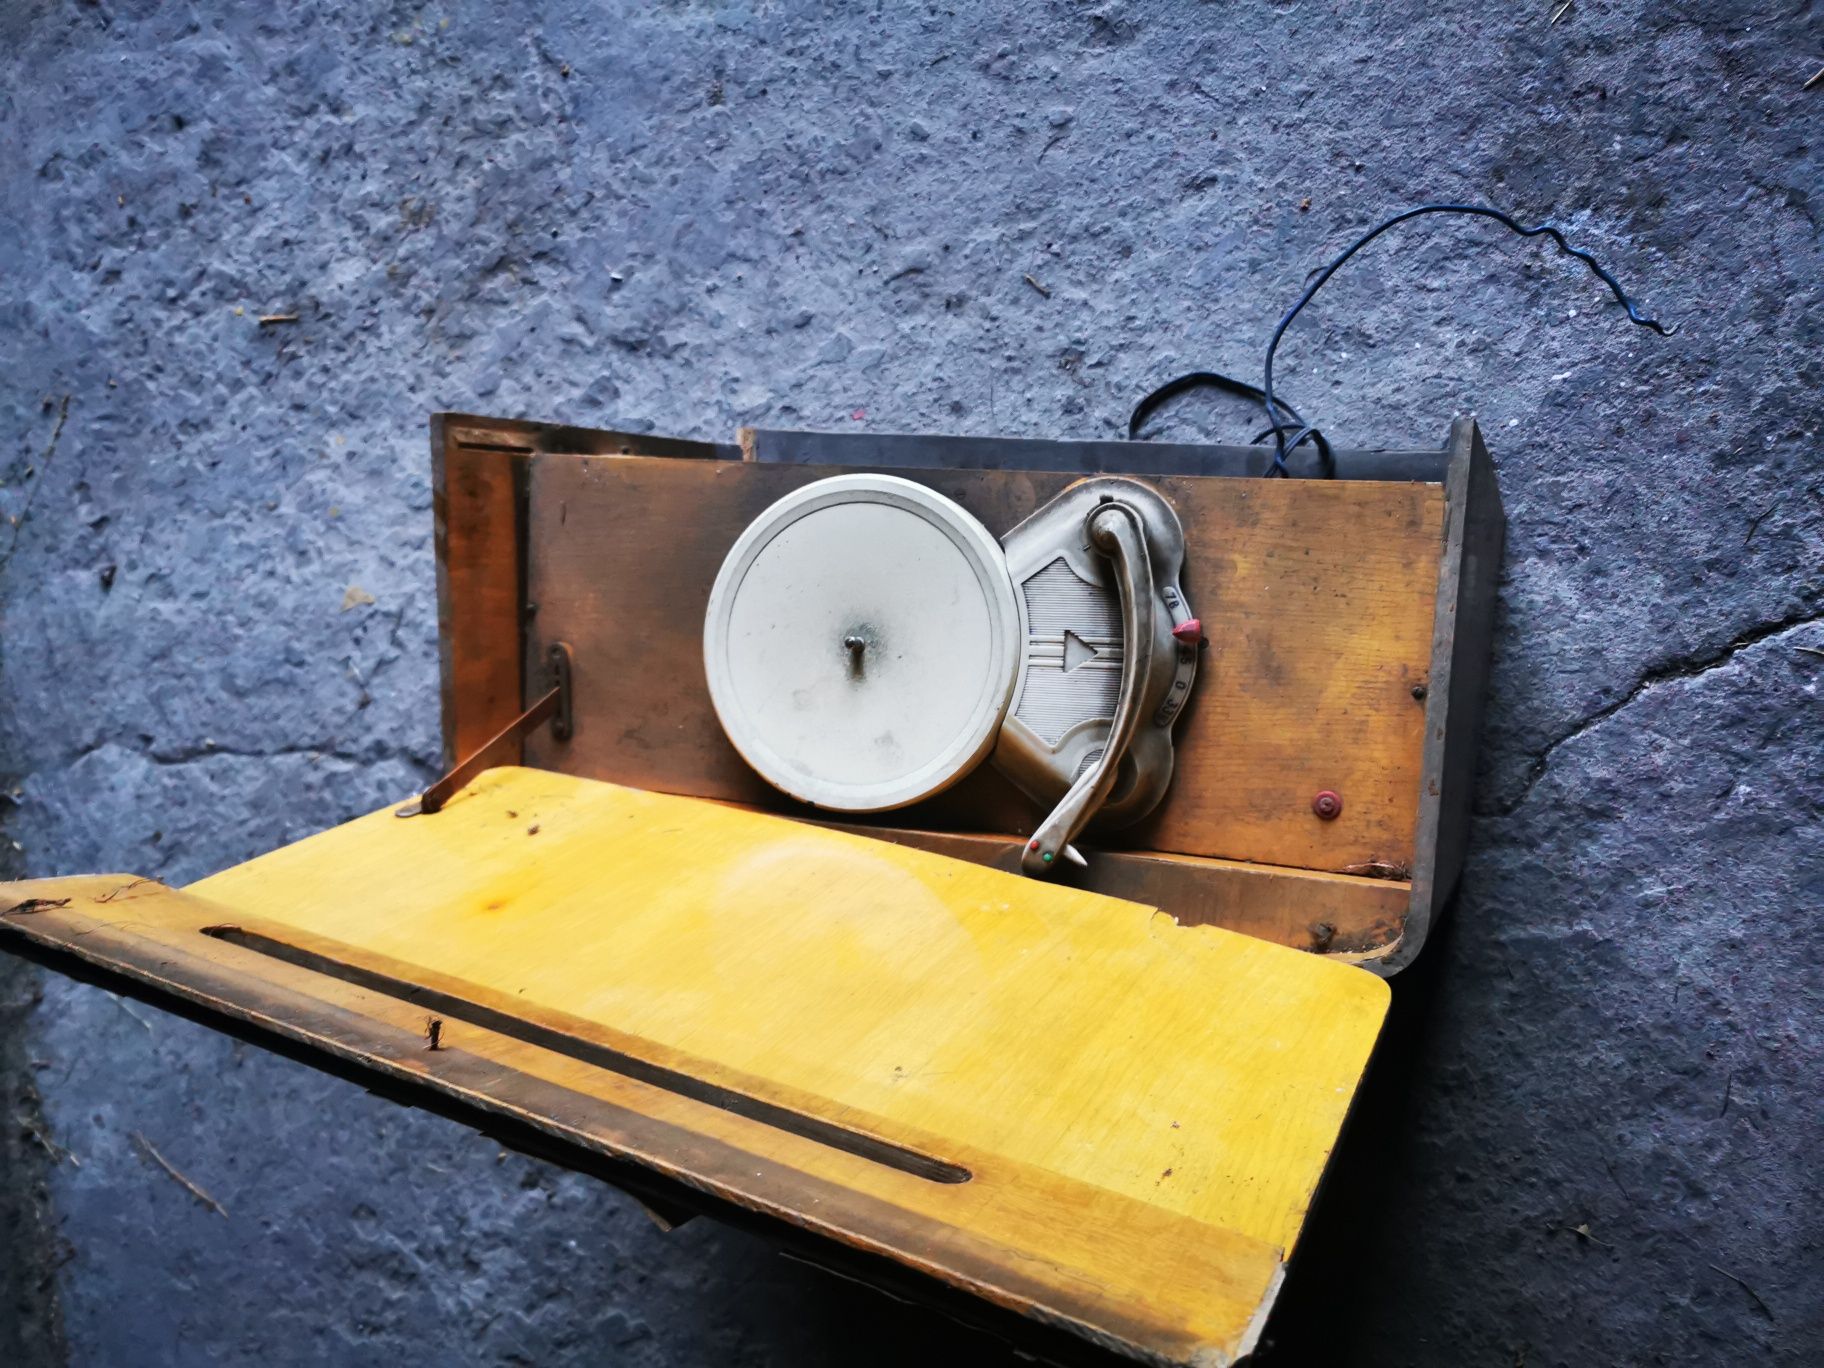 Stare radio z gramofonem